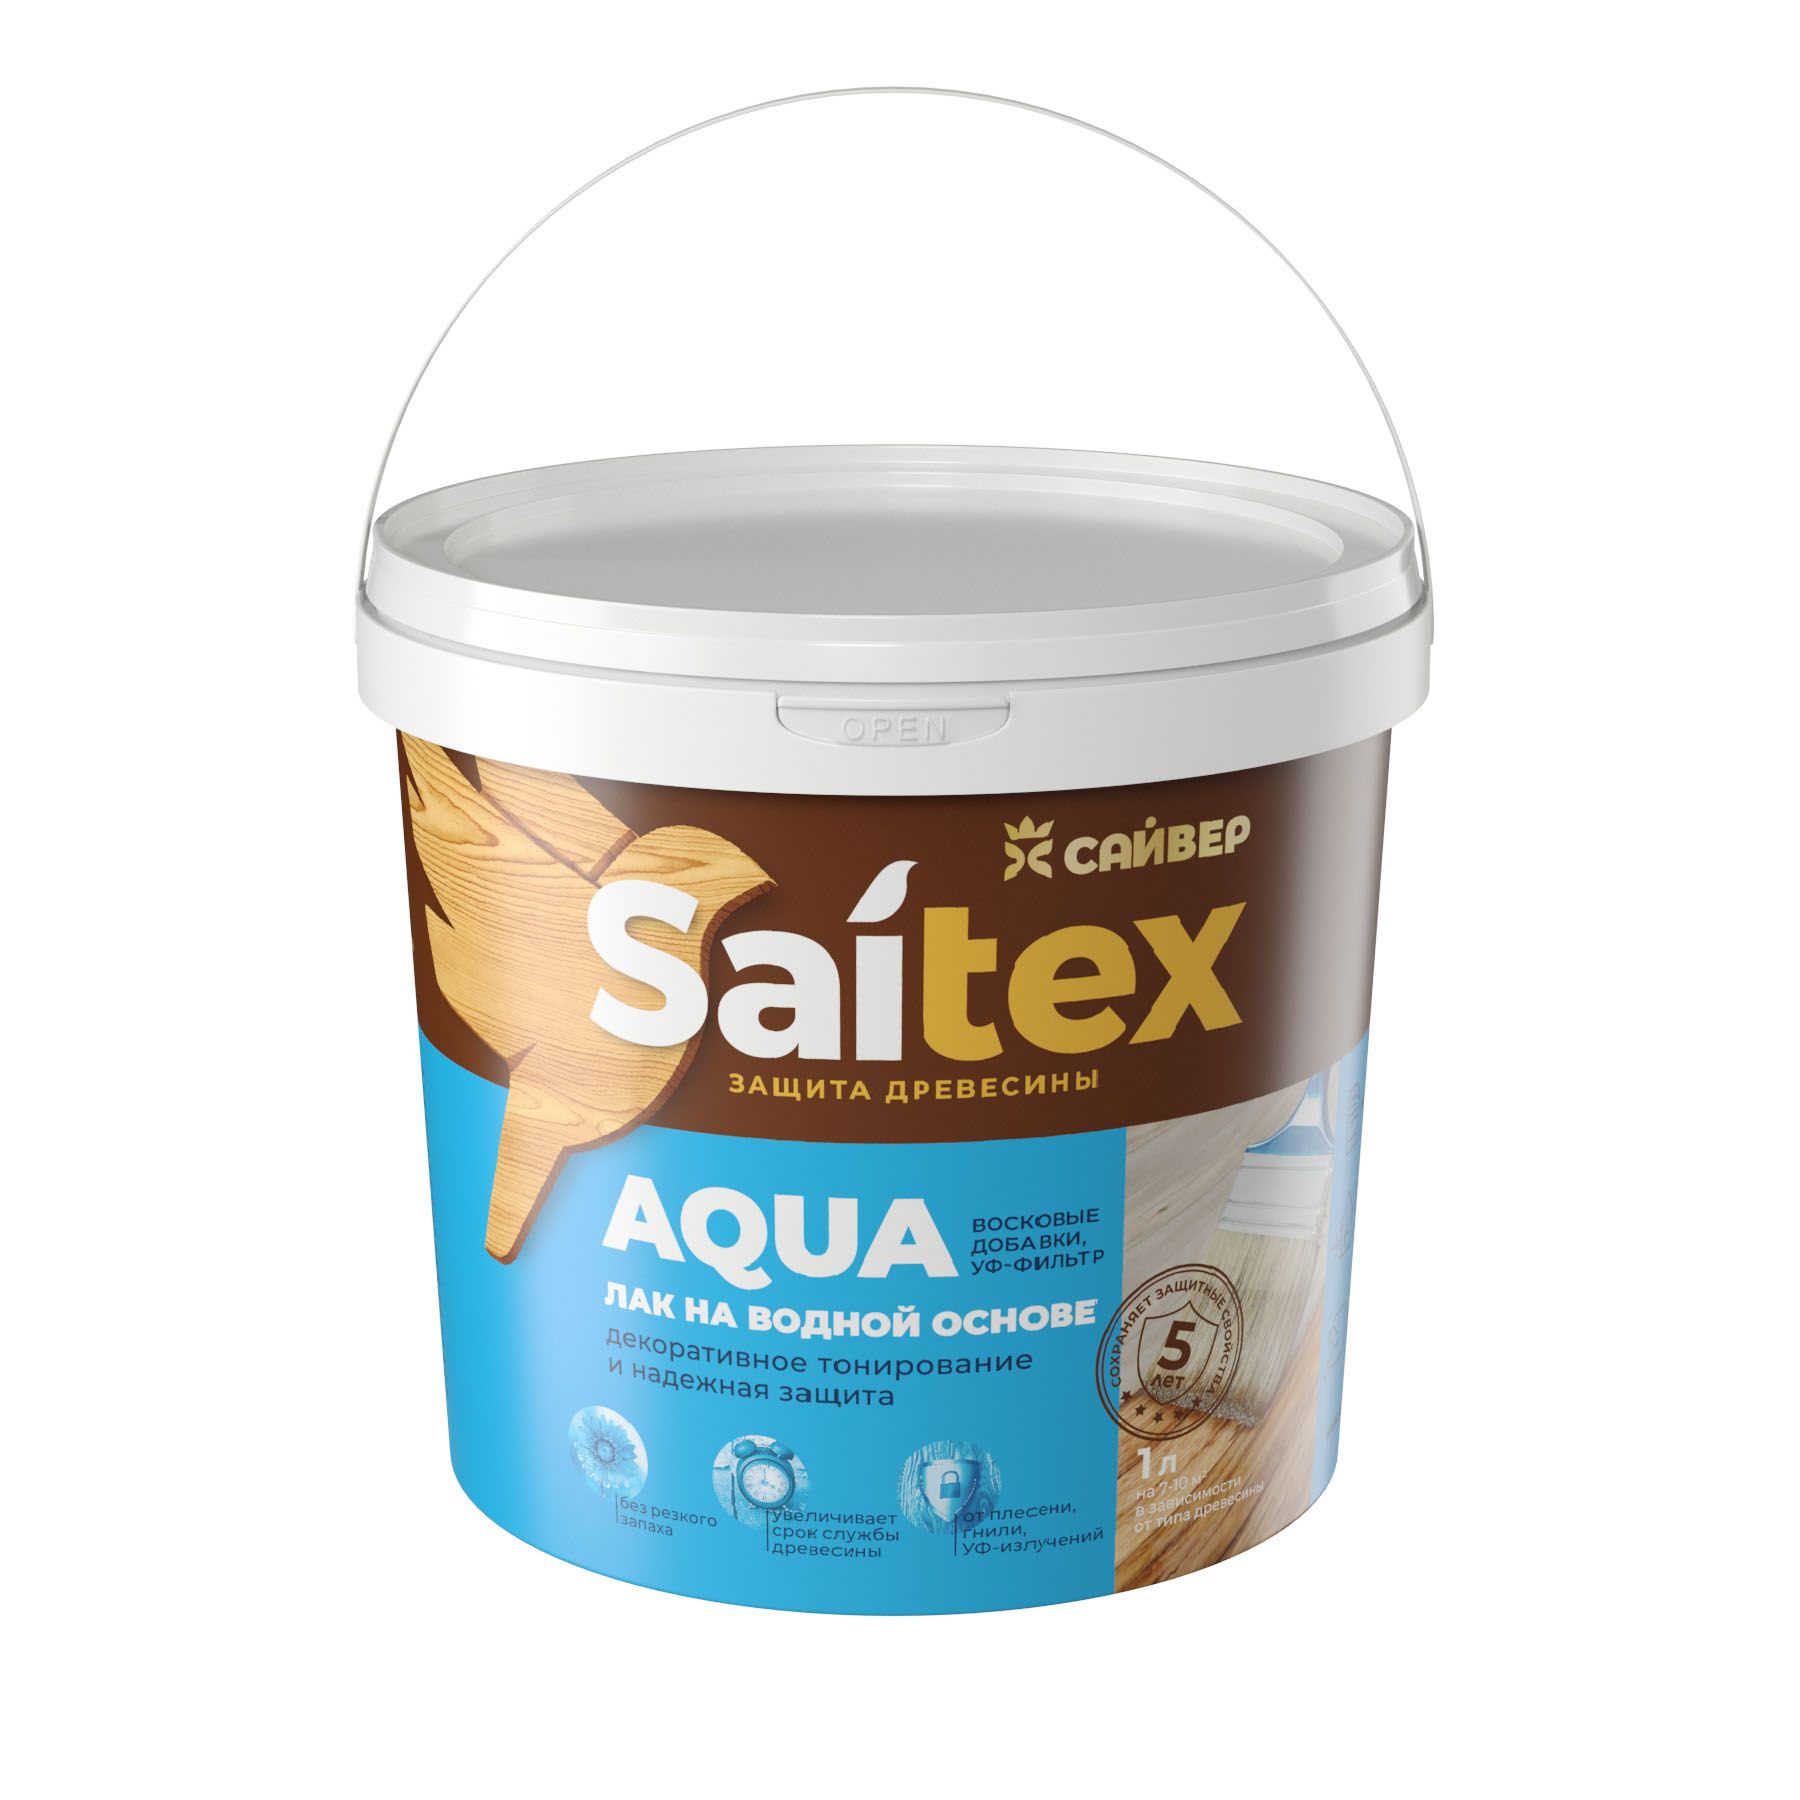 Saitex Aqua лак. Защита древесины Сайвер Saitex. Сайтекс Аква по дереву лак. Пропитка Сайвер Сайтекс. Водные лаки для дерева купить